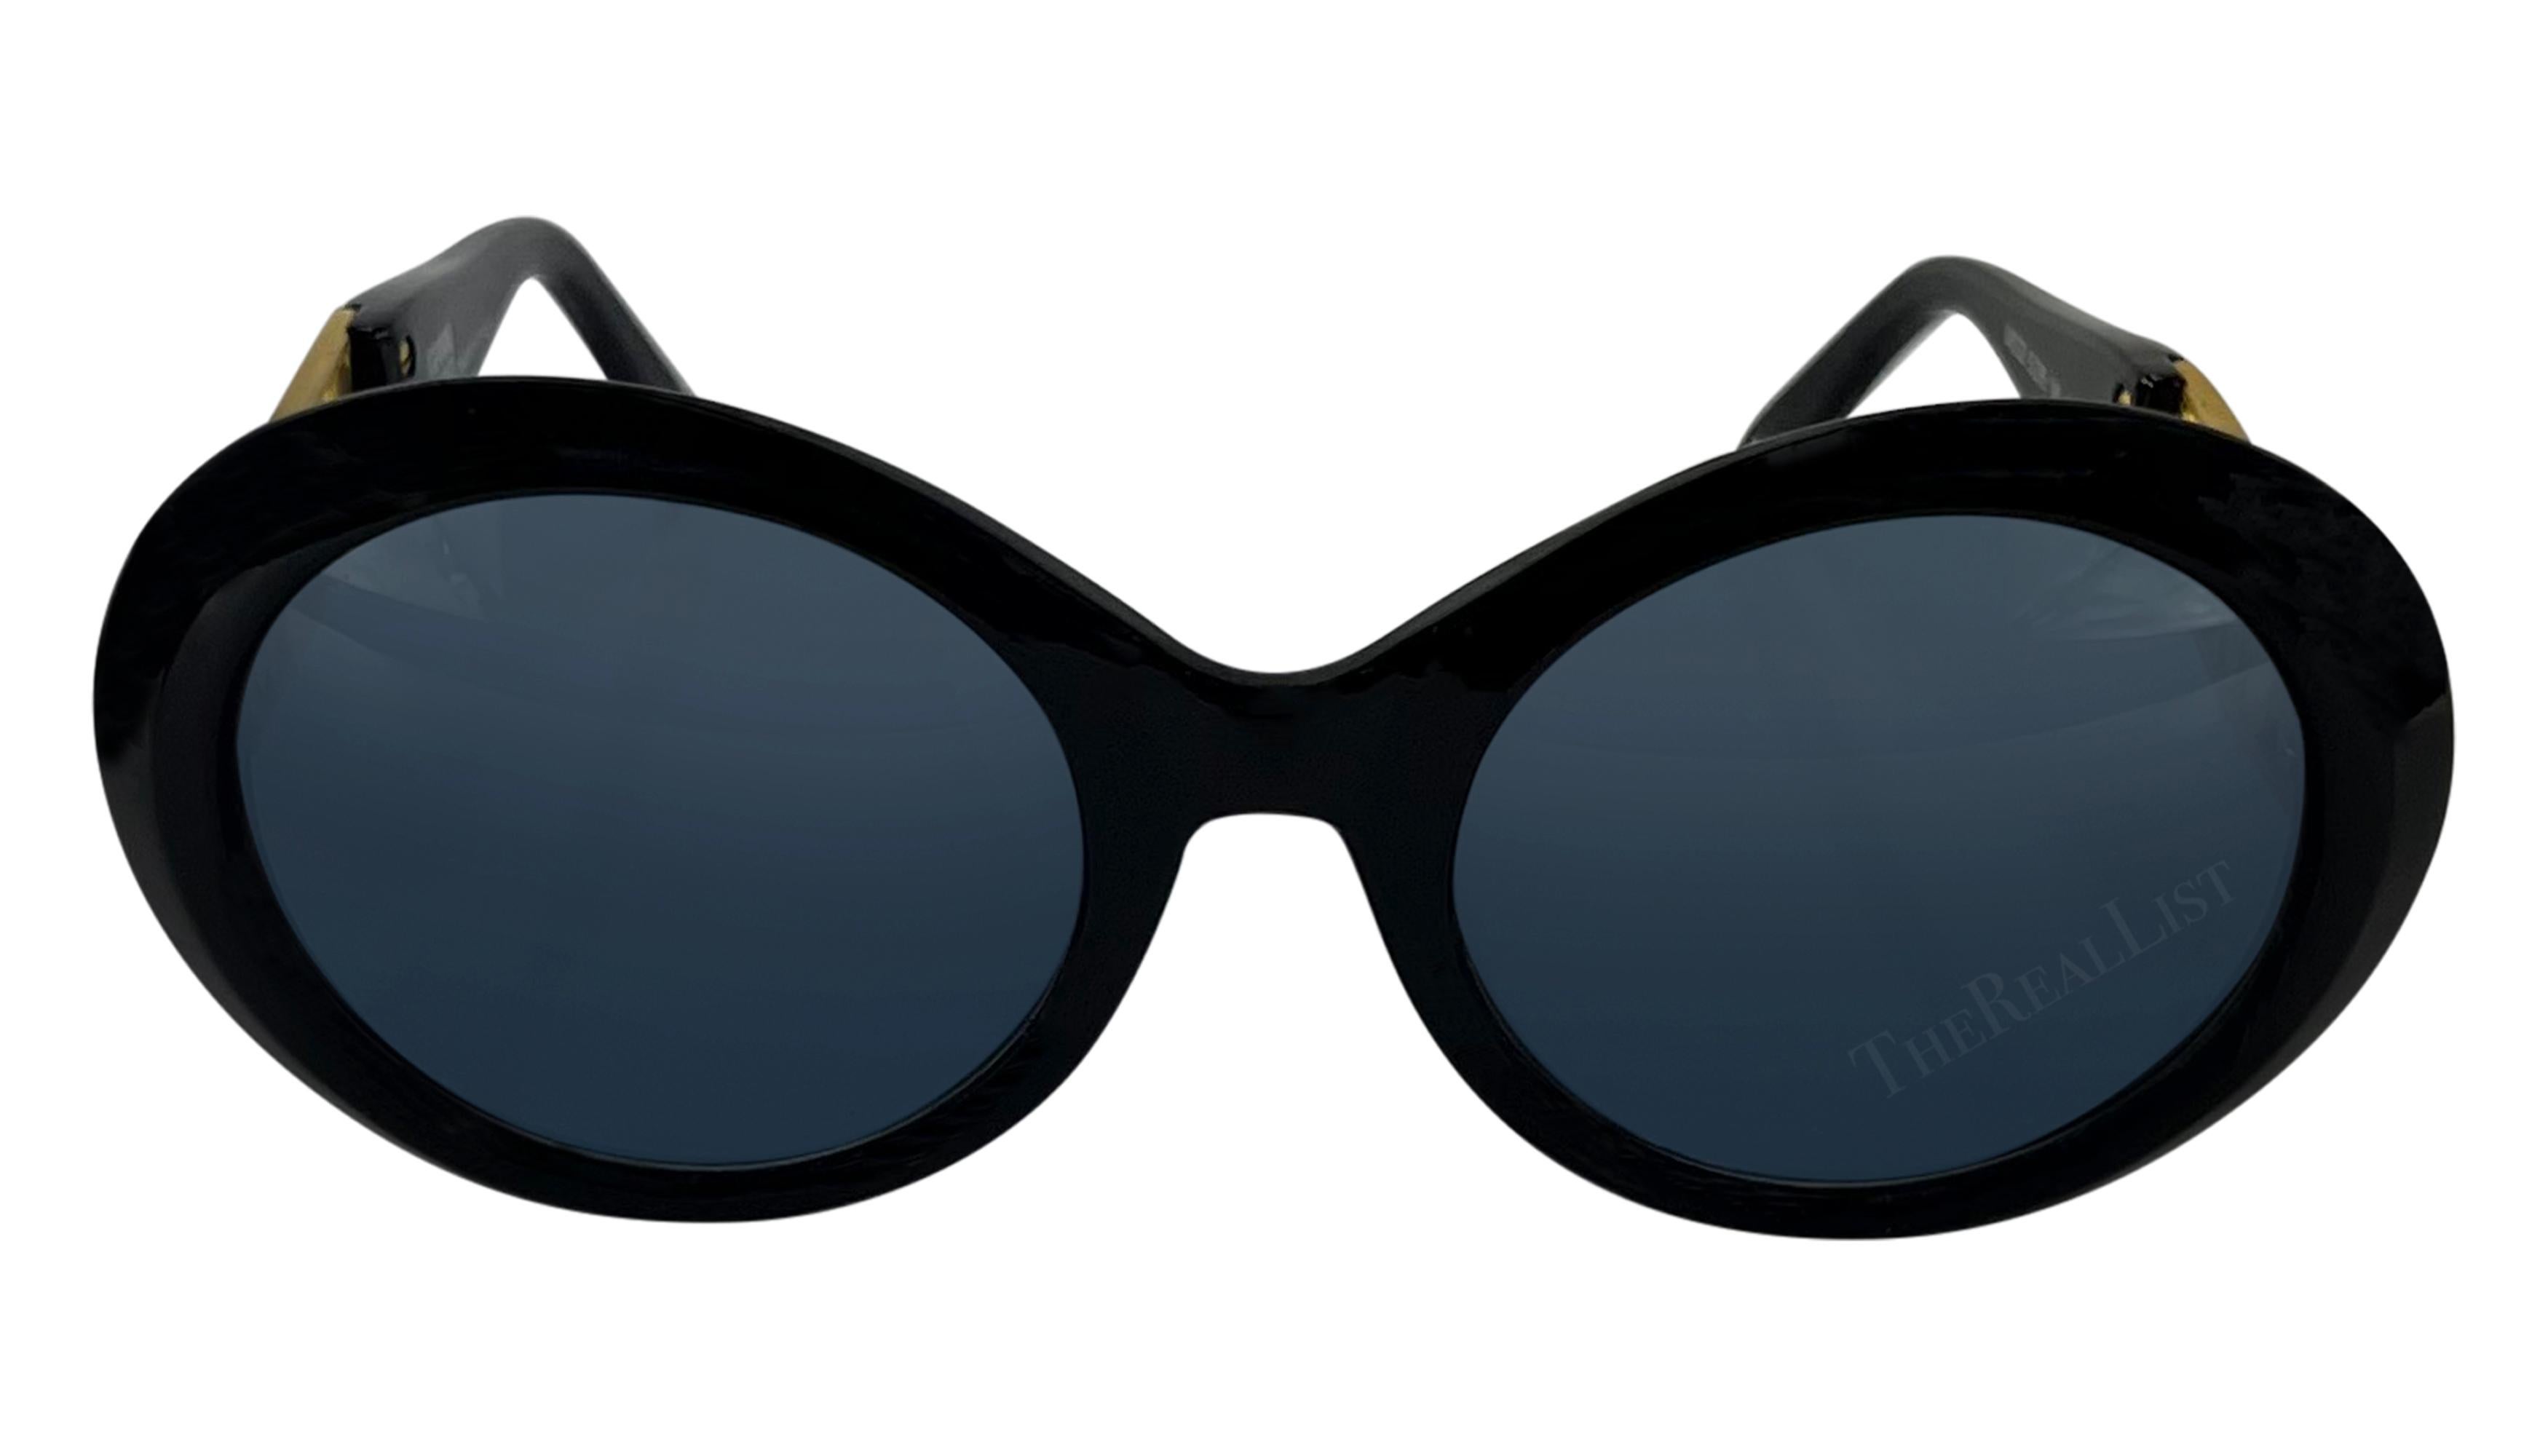 Ces lunettes de soleil rondes noires surdimensionnées, qui font partie de la collection printemps/été 1993, ont été conçues par Gianni Versace lui-même. Ornées des armoiries Miami en métal doré, elles rendent hommage à l'affection de Gianni pour